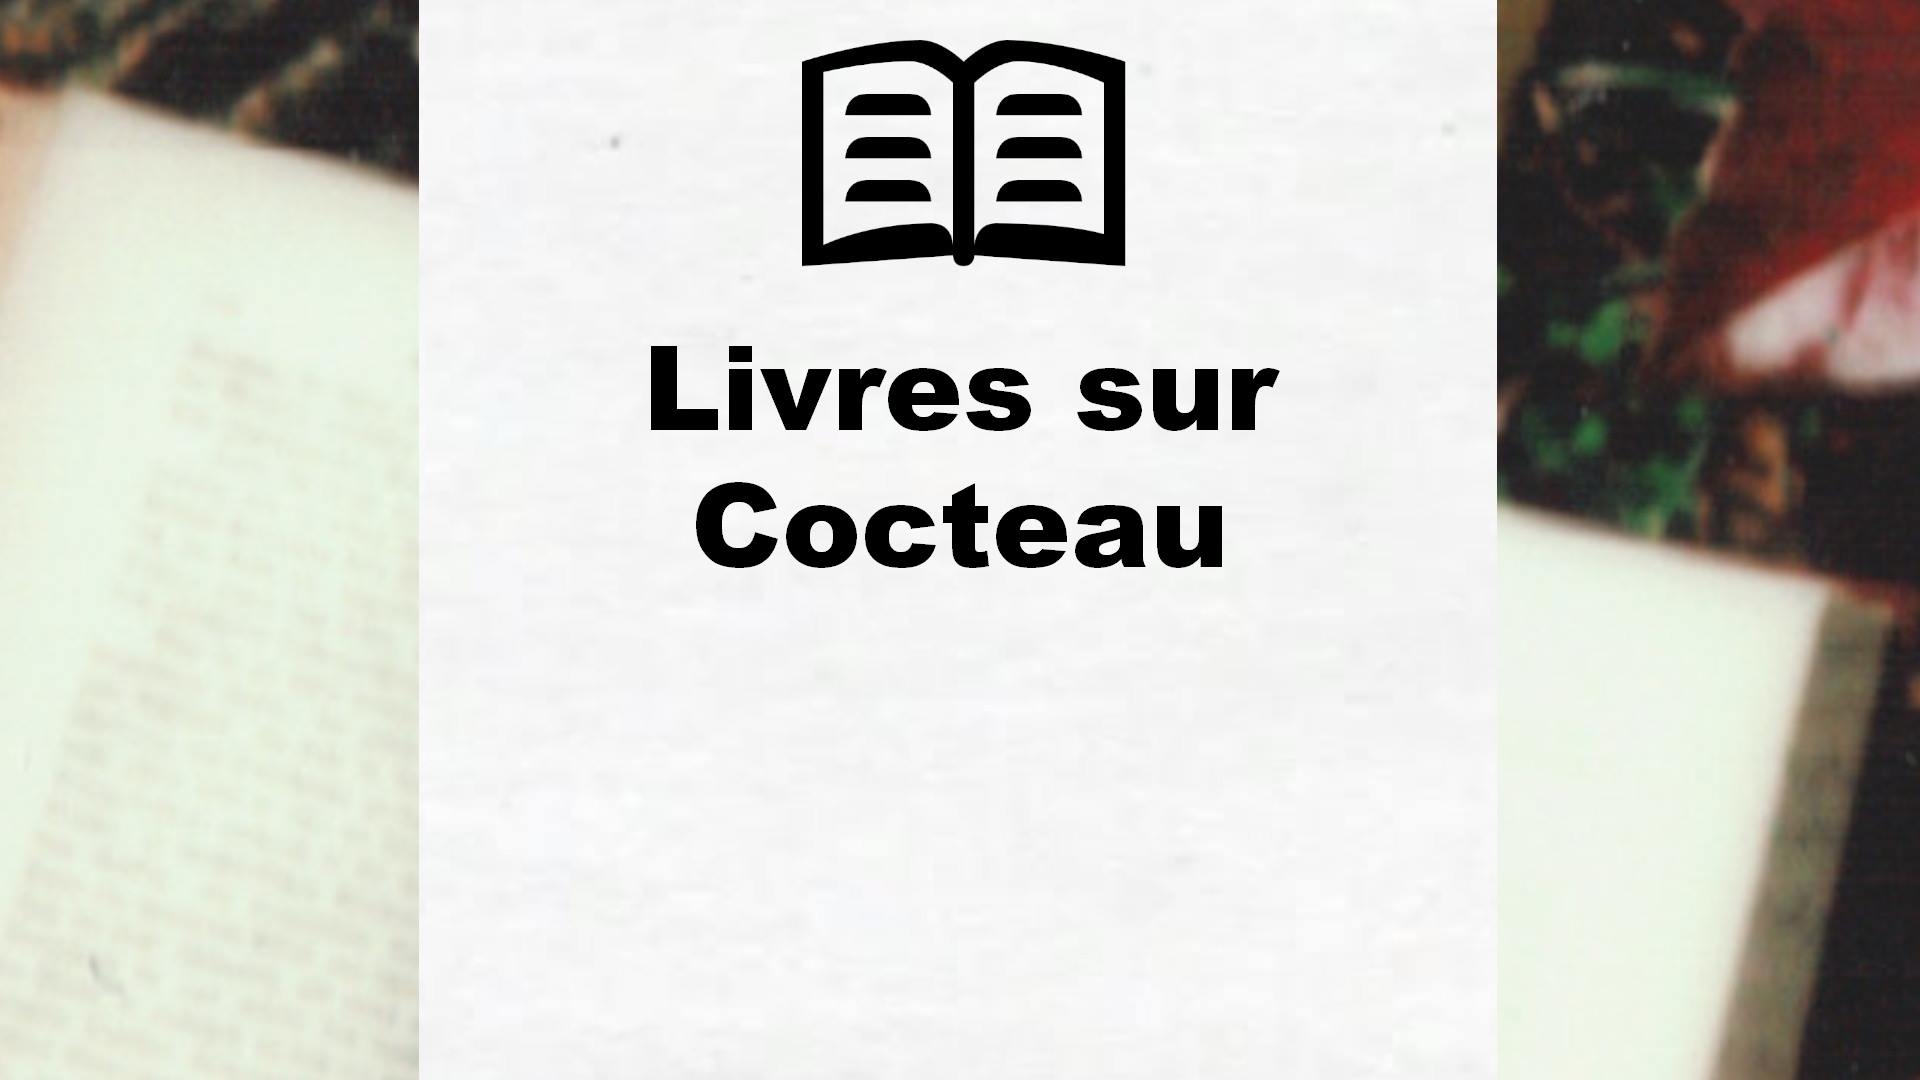 Livres sur Cocteau